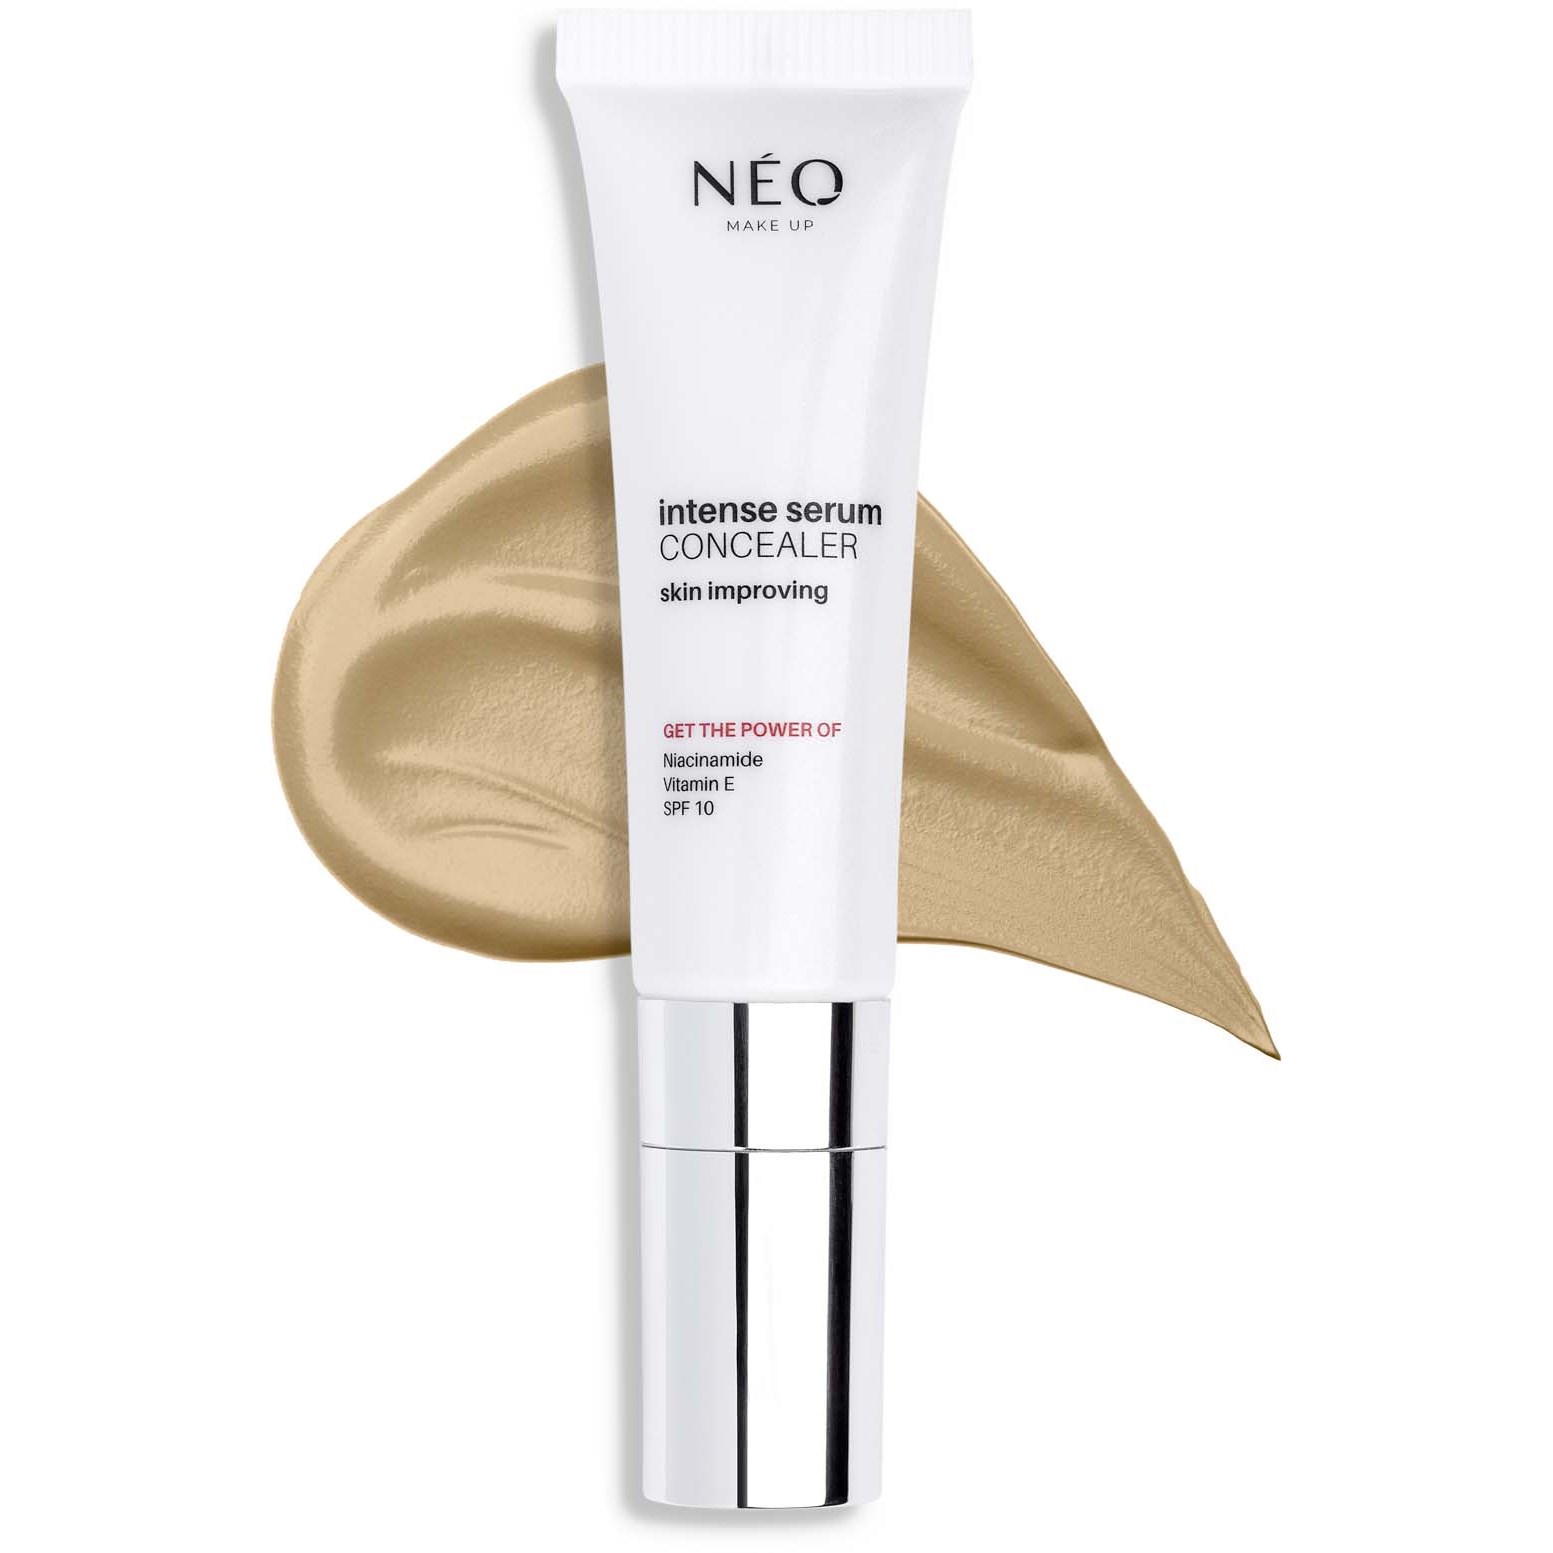 NEO Make Up Intense Serum Concealer